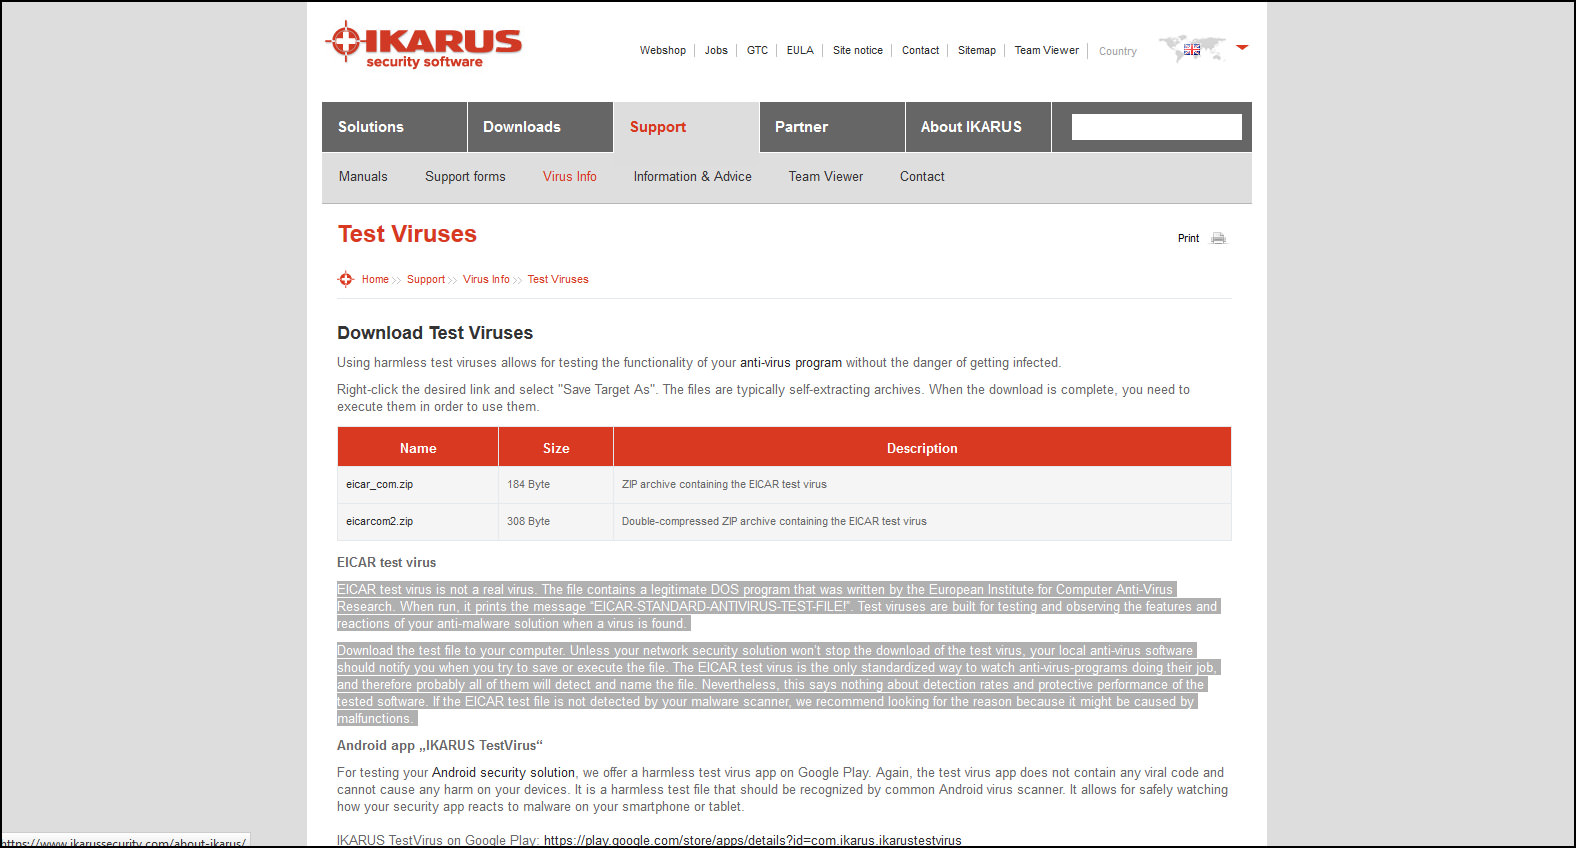 IKARUS TestVirus - Apps on Google Play